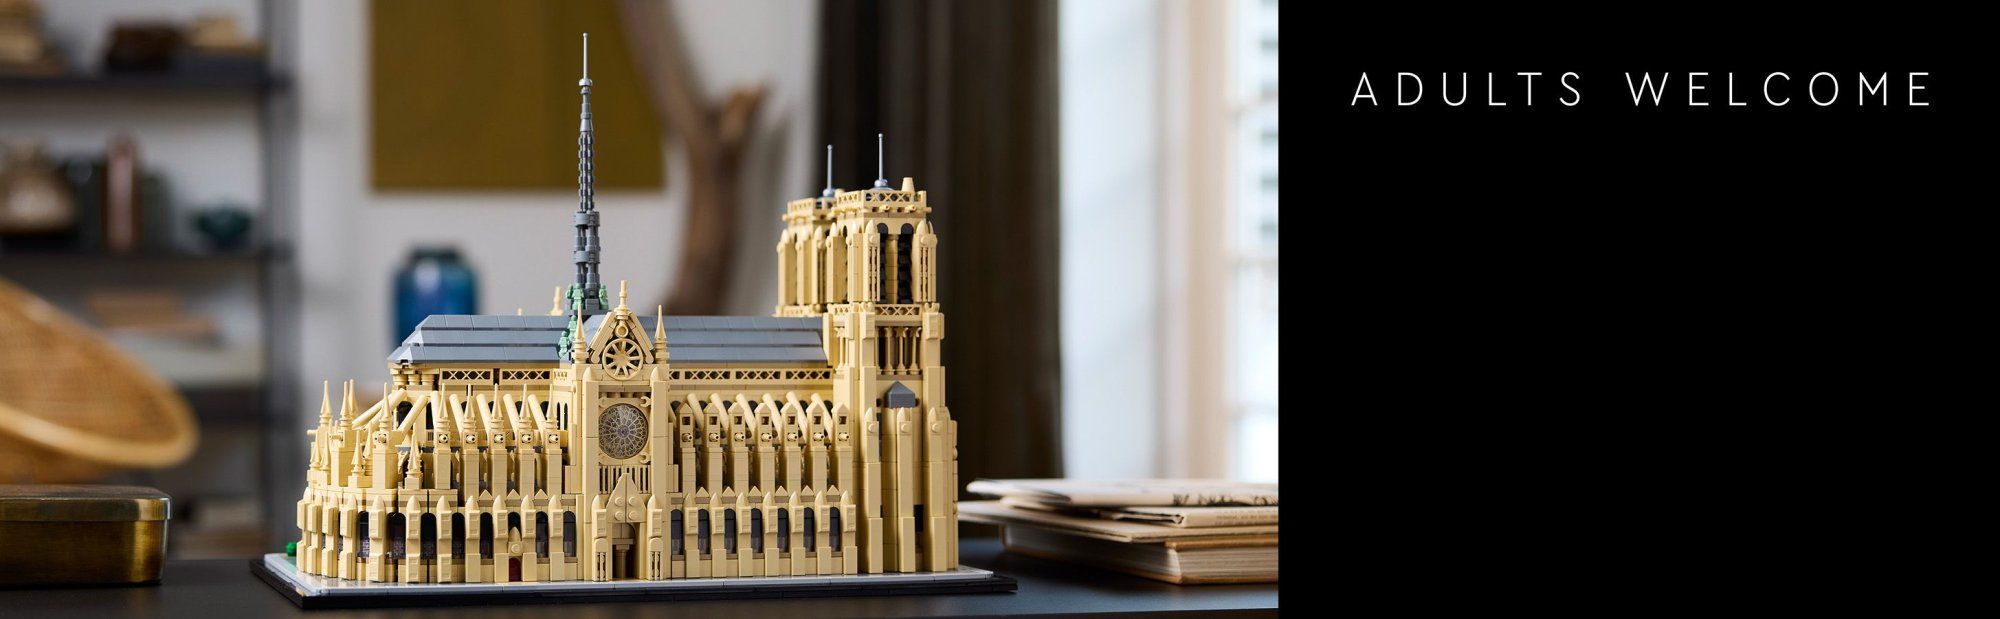 LEGO Architecture 21061 Notre-Dame v Paríži